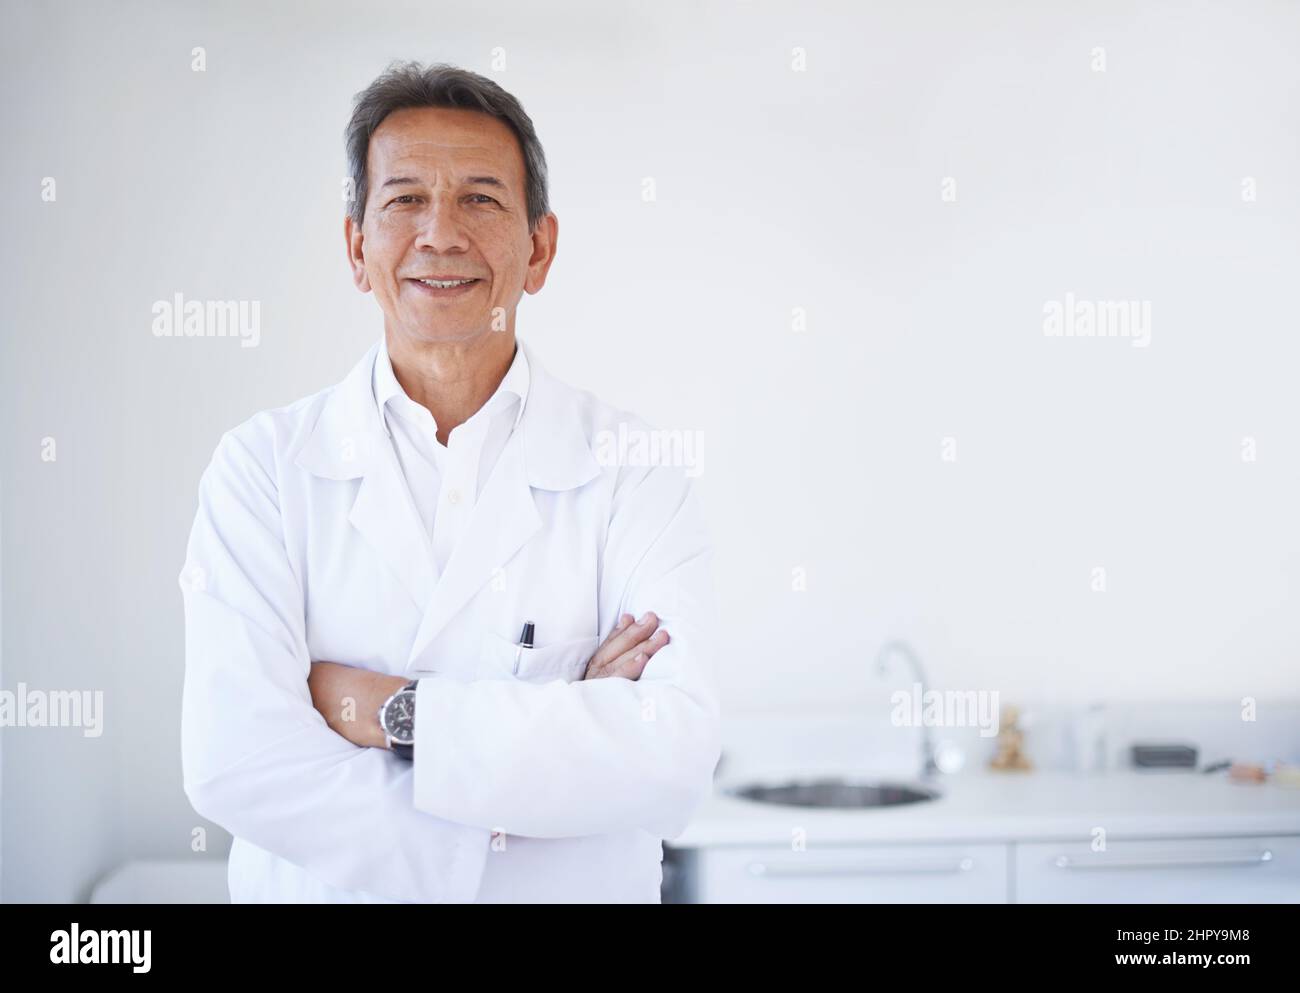 HES il dentista migliore che potreste desiderare. Ritratto di un chirurgo maschio maturo in piedi in ospedale. Foto Stock